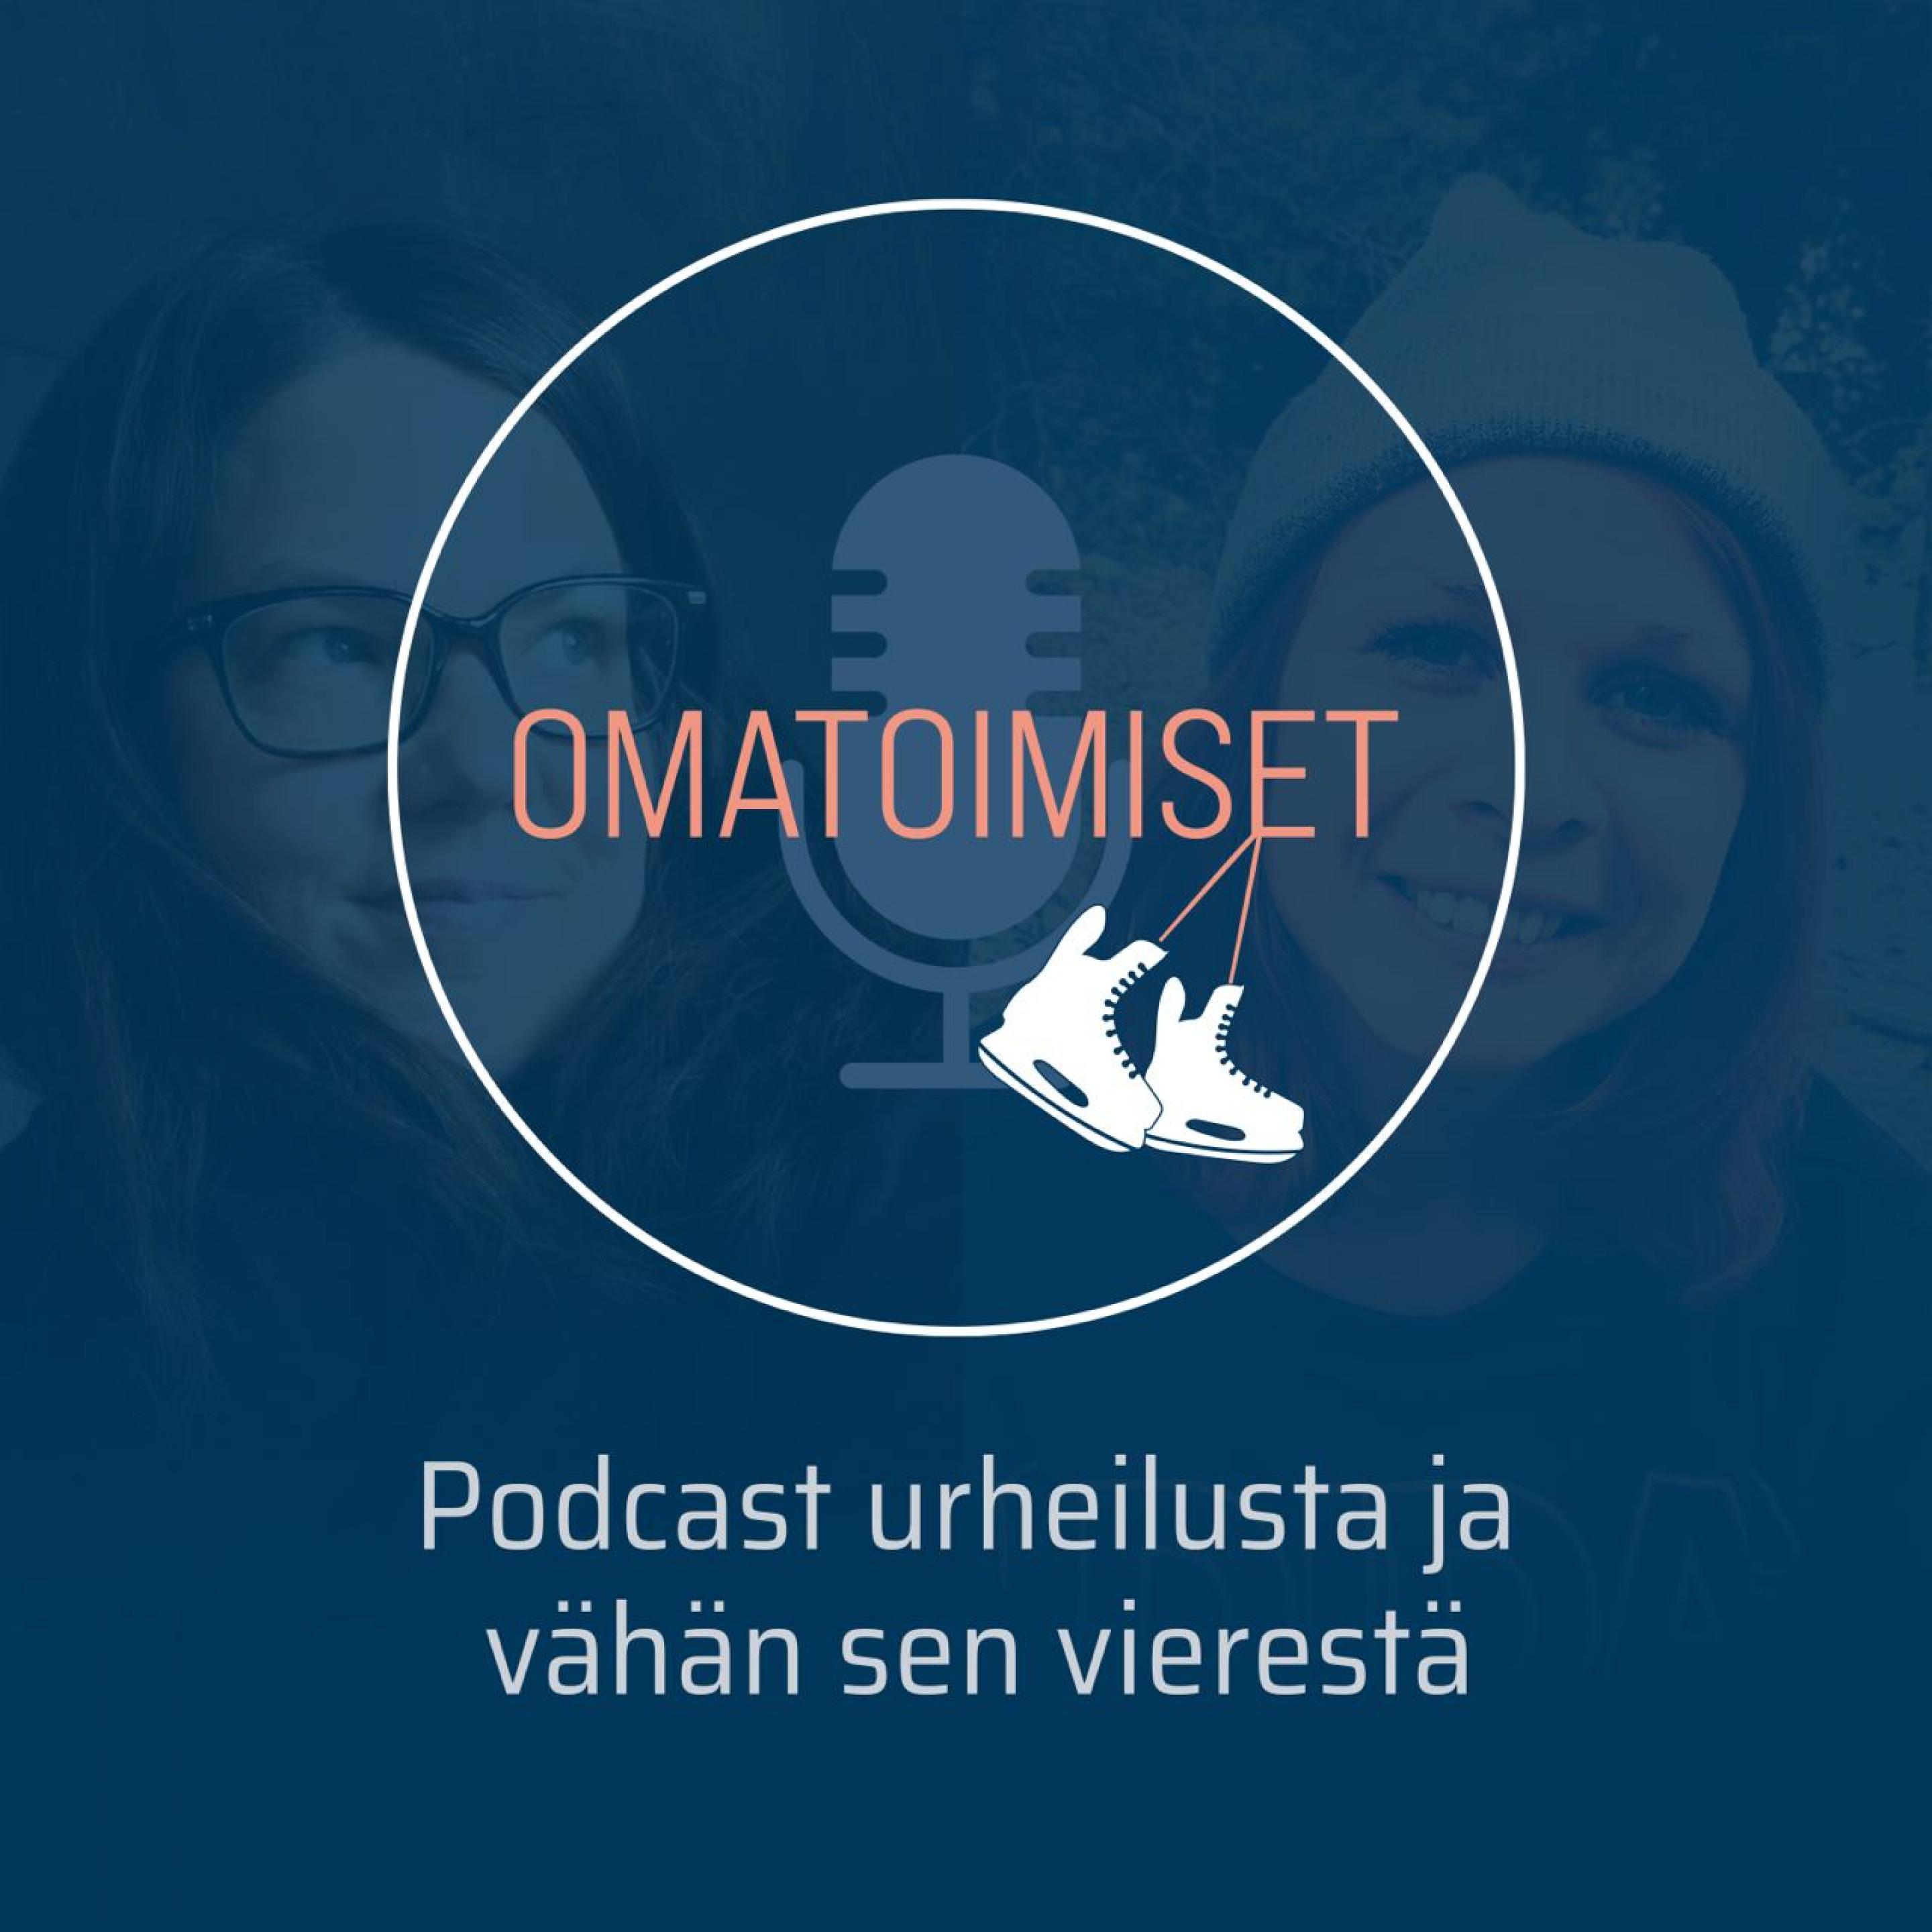 Omatoimiset - podcast